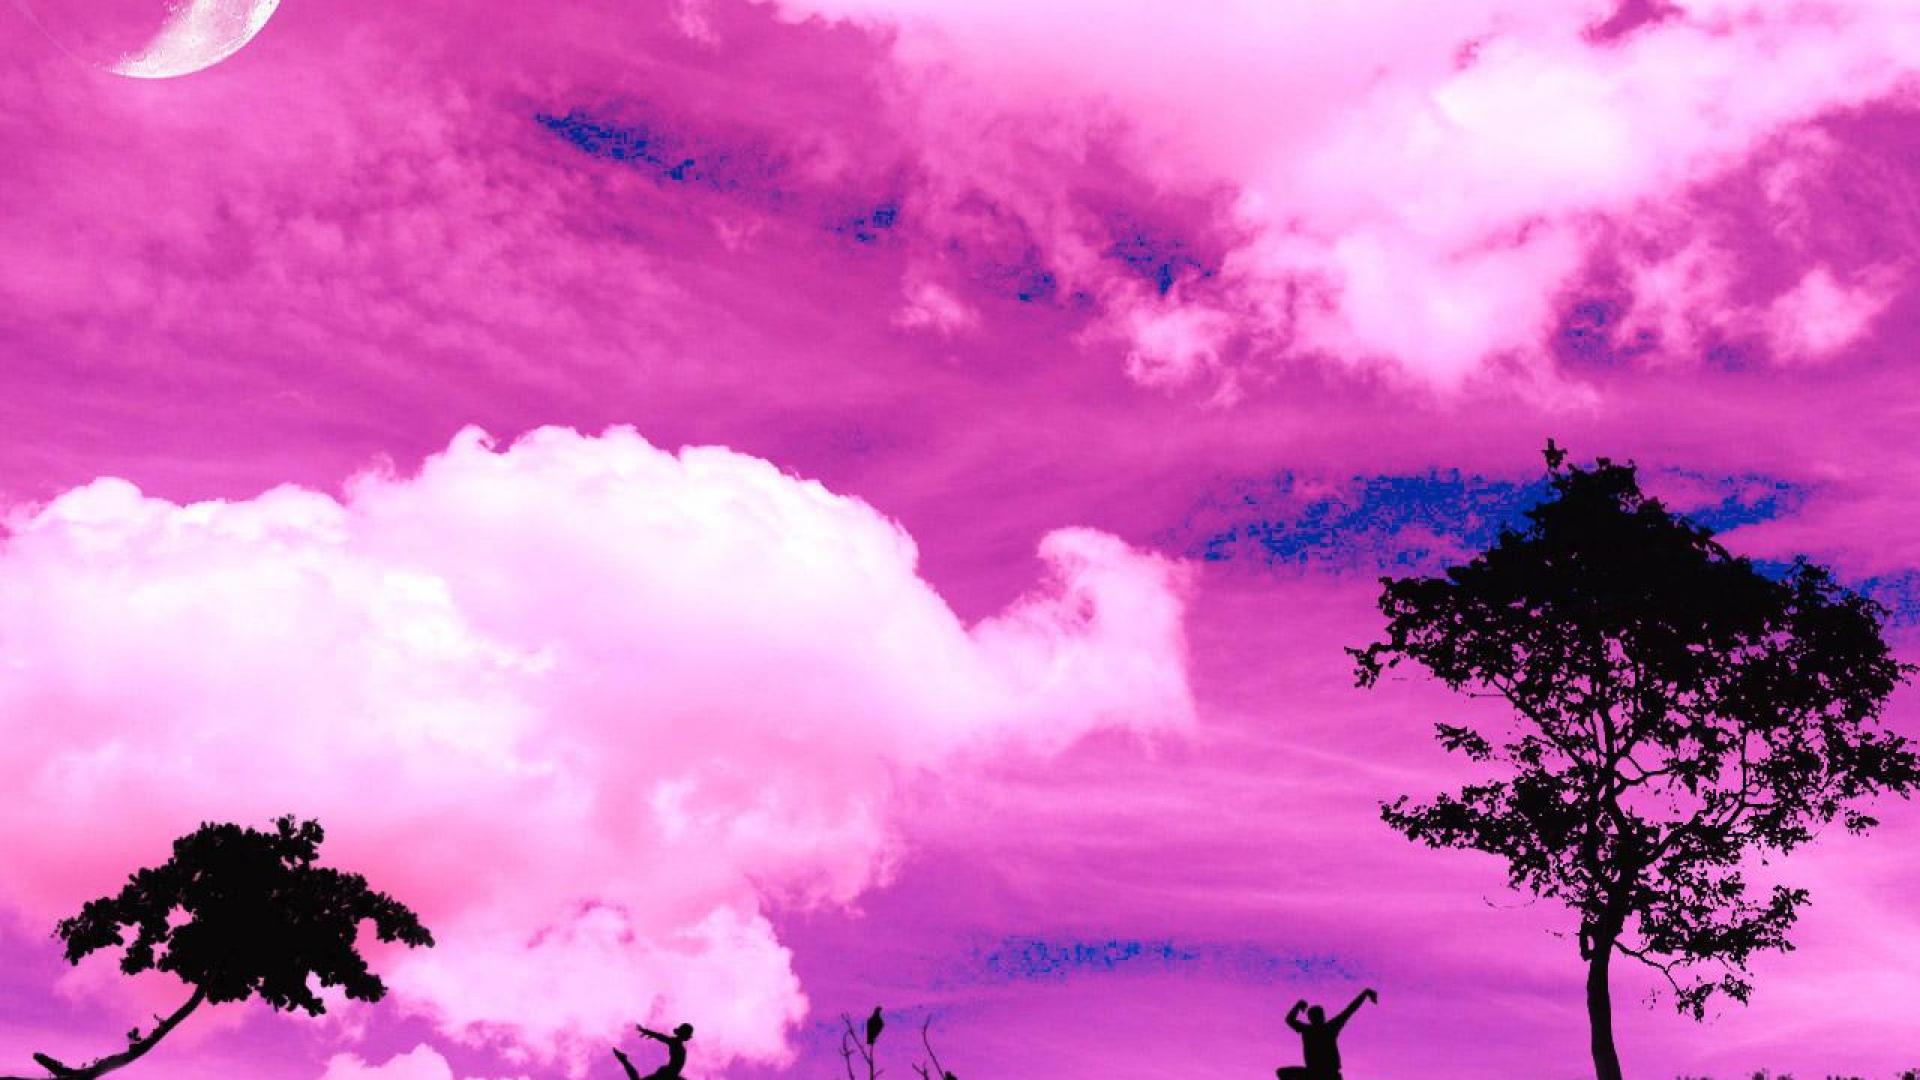 [50+] Pink Desktop Wallpaper Themes - WallpaperSafari